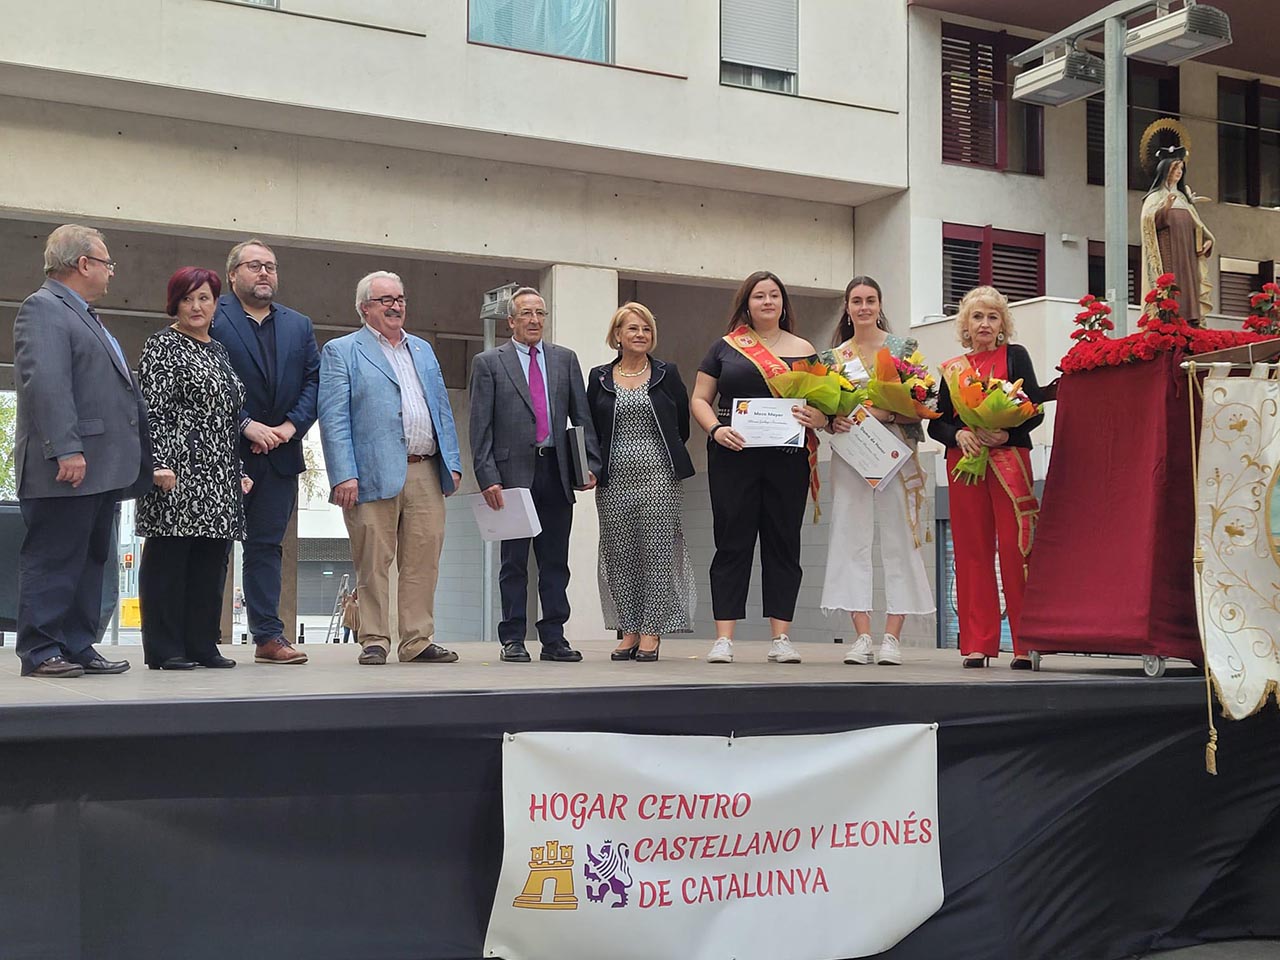 Fiestas de Santa Teresa en el Hogar Centro Castellano y Leonés de Catalunya, año 2022